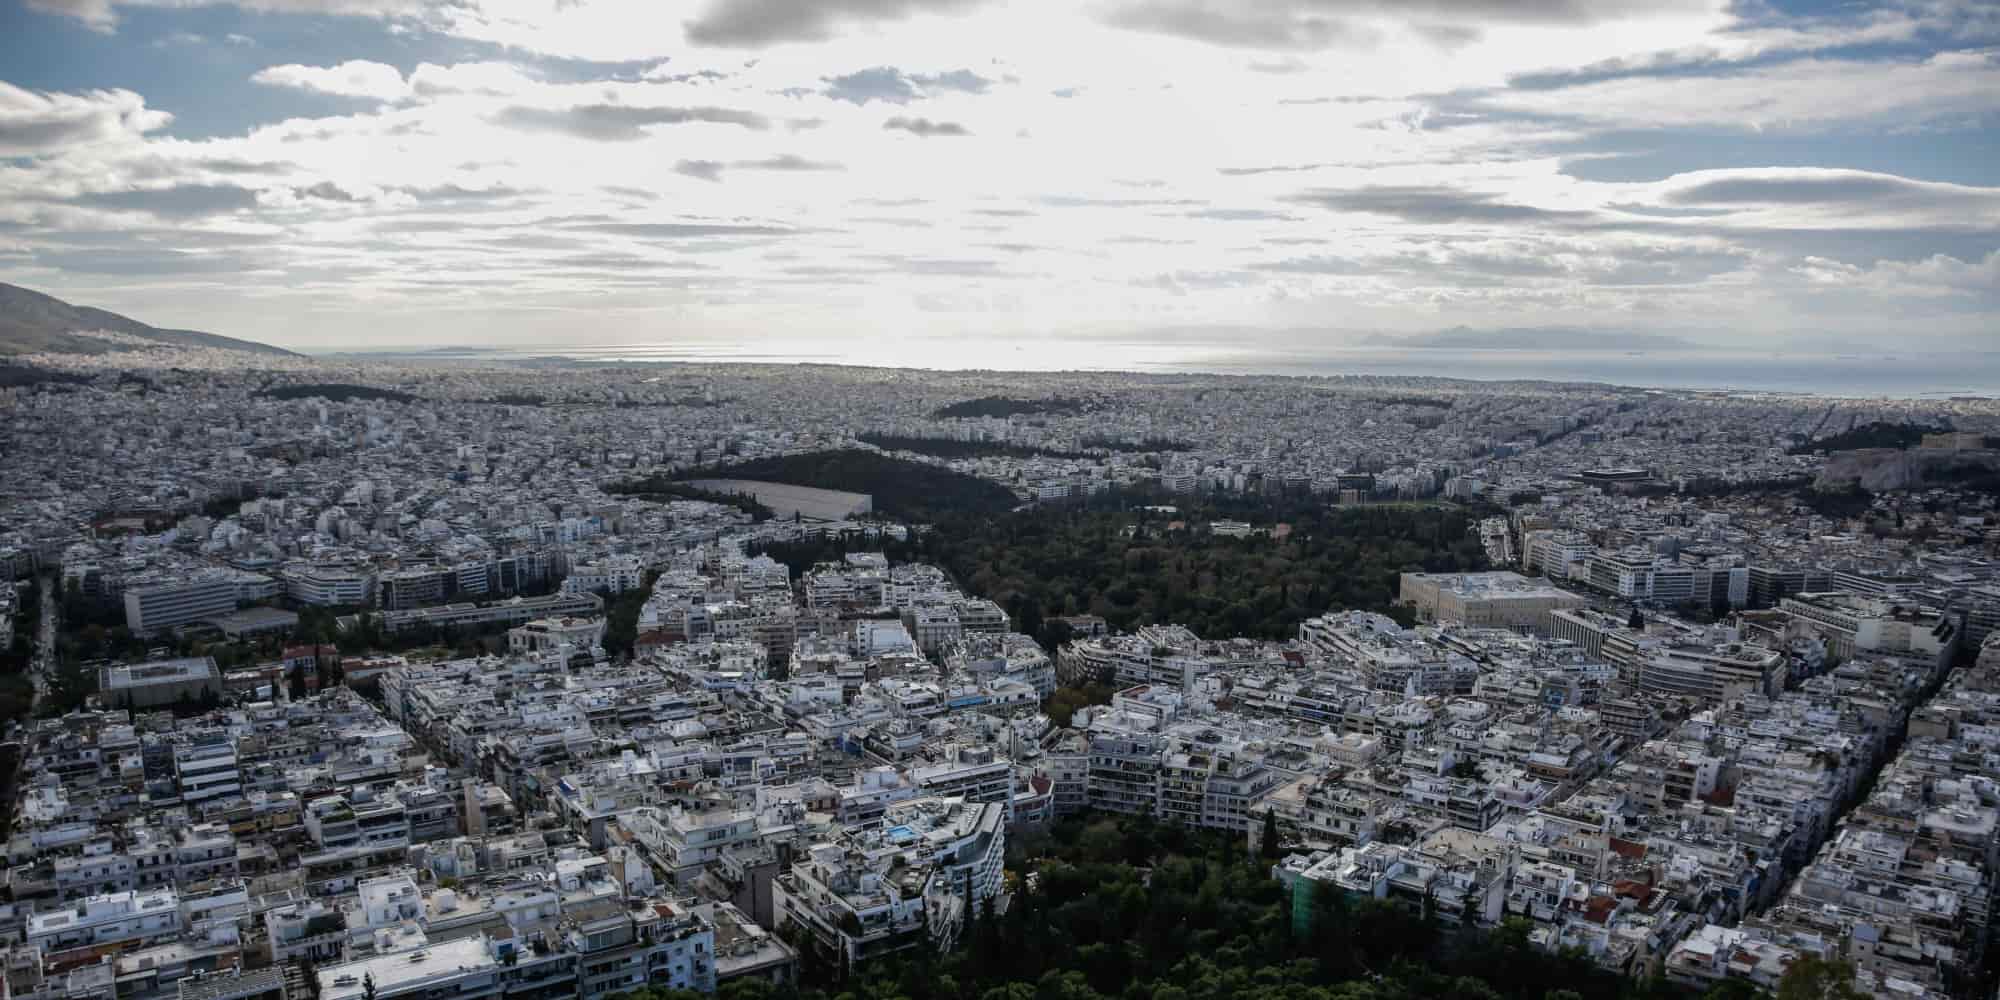 Πολυκατοικίες στην Αθήνα από ψηλά - ρεύμα